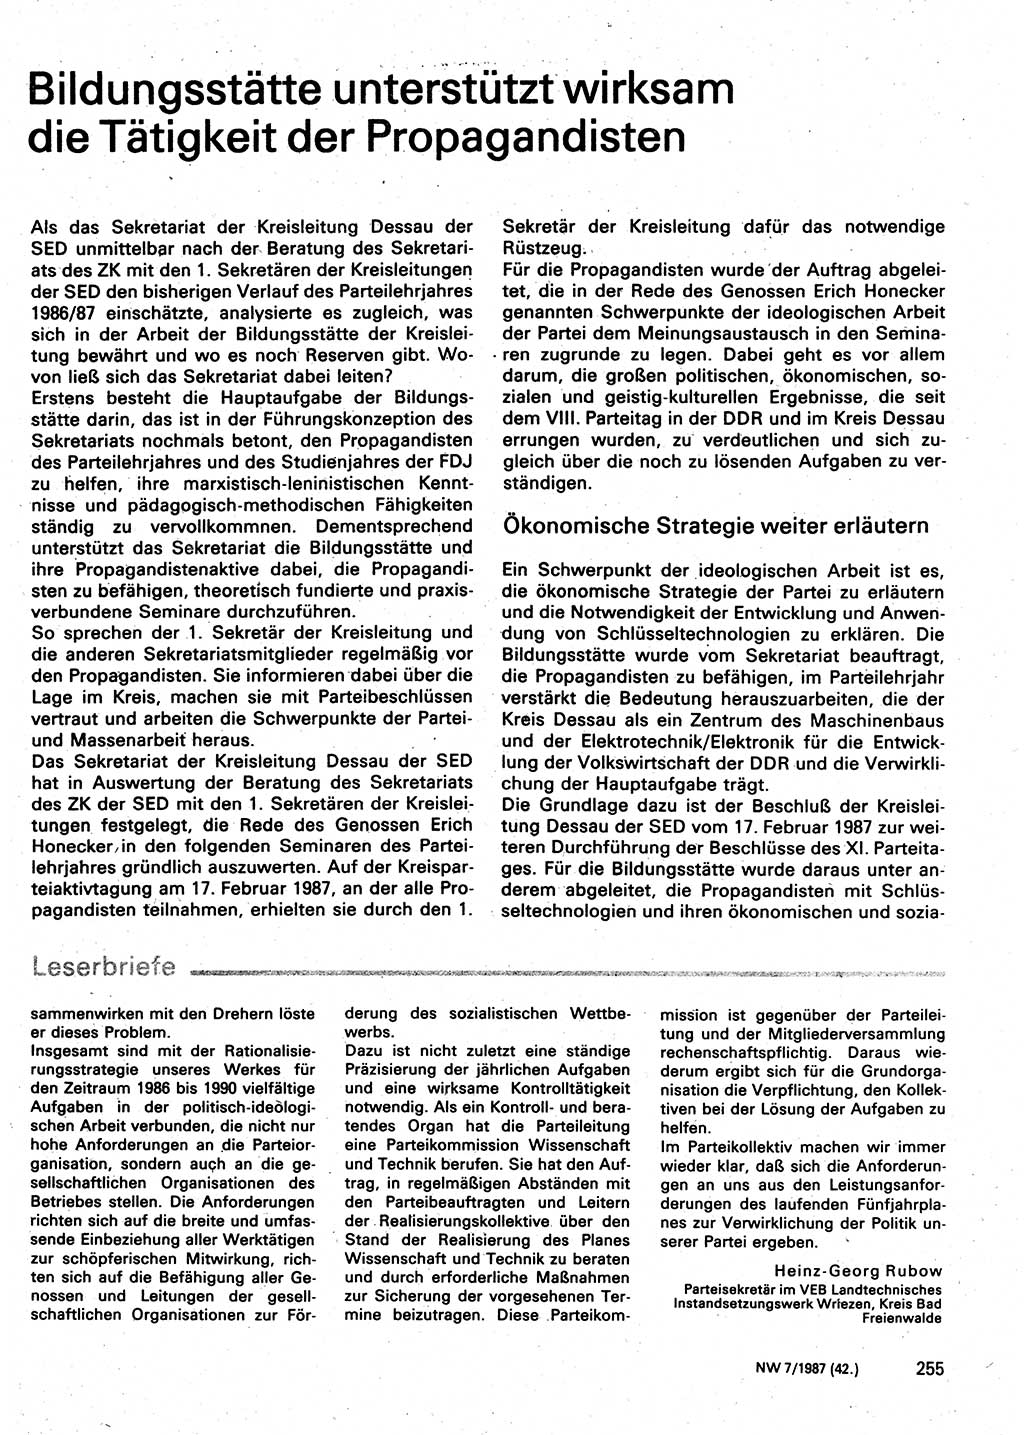 Neuer Weg (NW), Organ des Zentralkomitees (ZK) der SED (Sozialistische Einheitspartei Deutschlands) für Fragen des Parteilebens, 42. Jahrgang [Deutsche Demokratische Republik (DDR)] 1987, Seite 255 (NW ZK SED DDR 1987, S. 255)